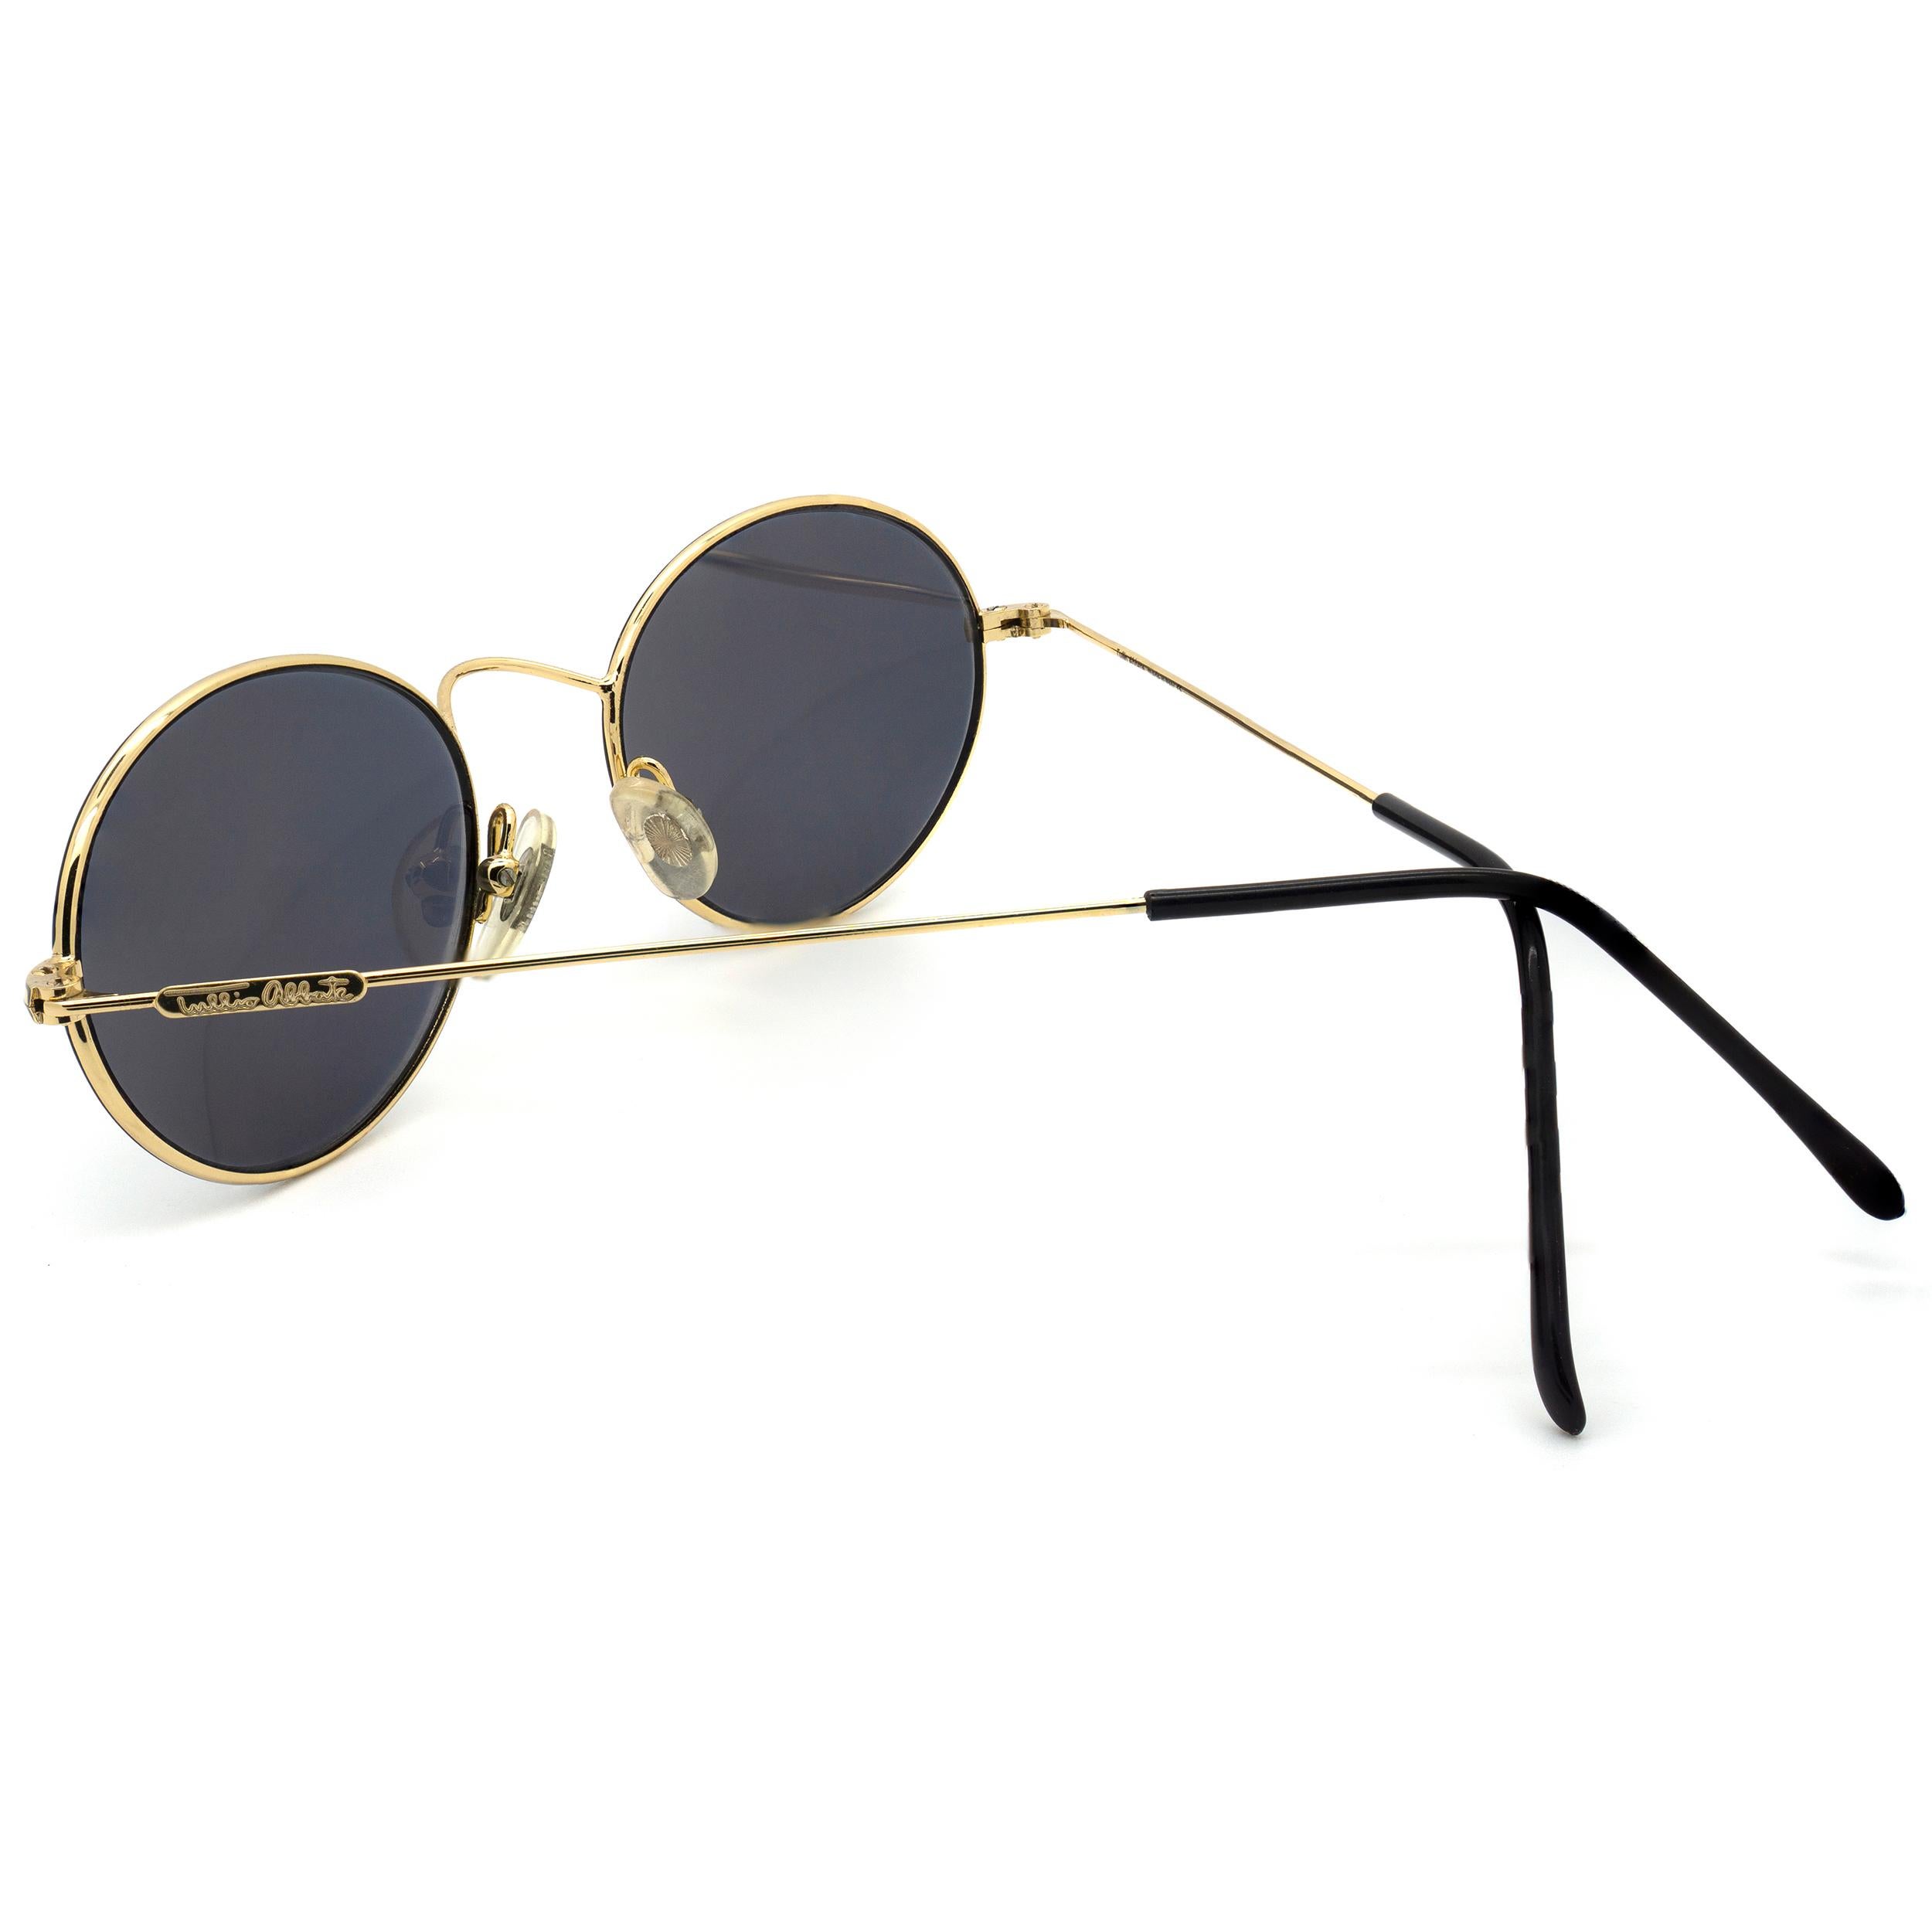 Tullio Abbate Ultra-Lightweight Oval Sunglasses In New Condition For Sale In Santa Clarita, CA